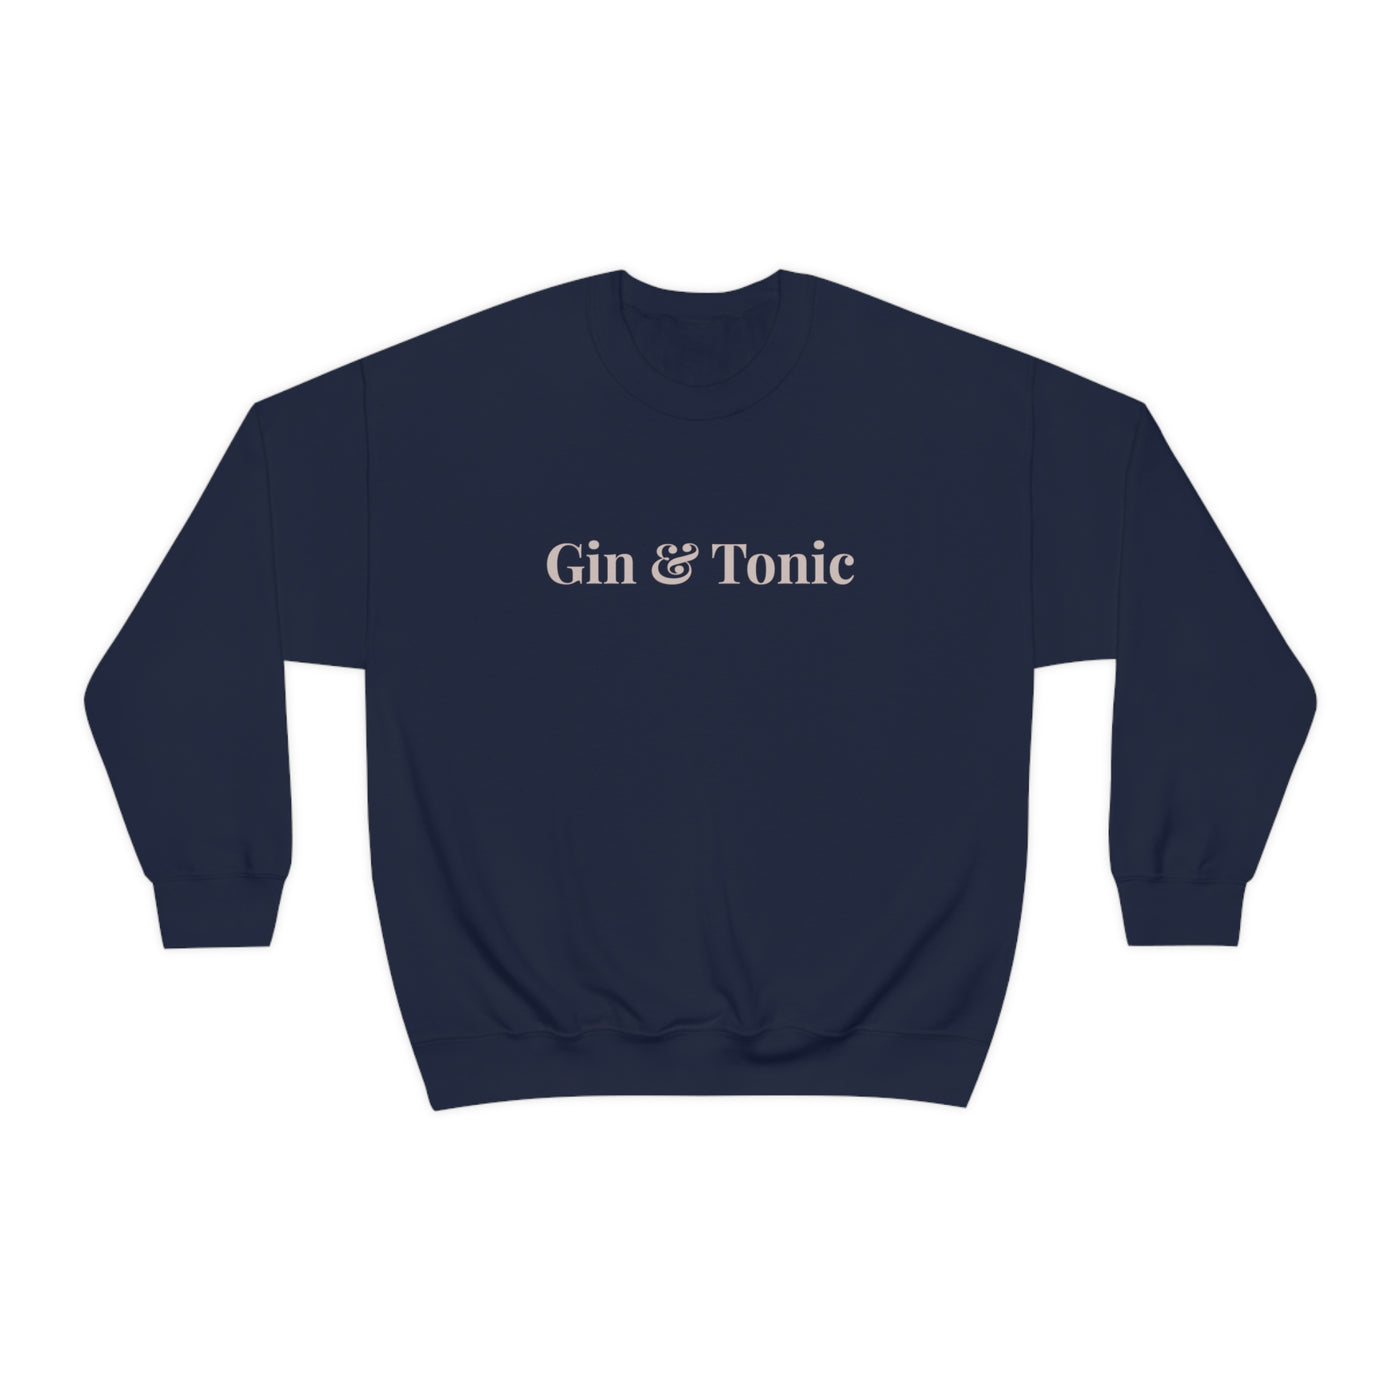 Gin & Tonic Crewneck Sweatshirt